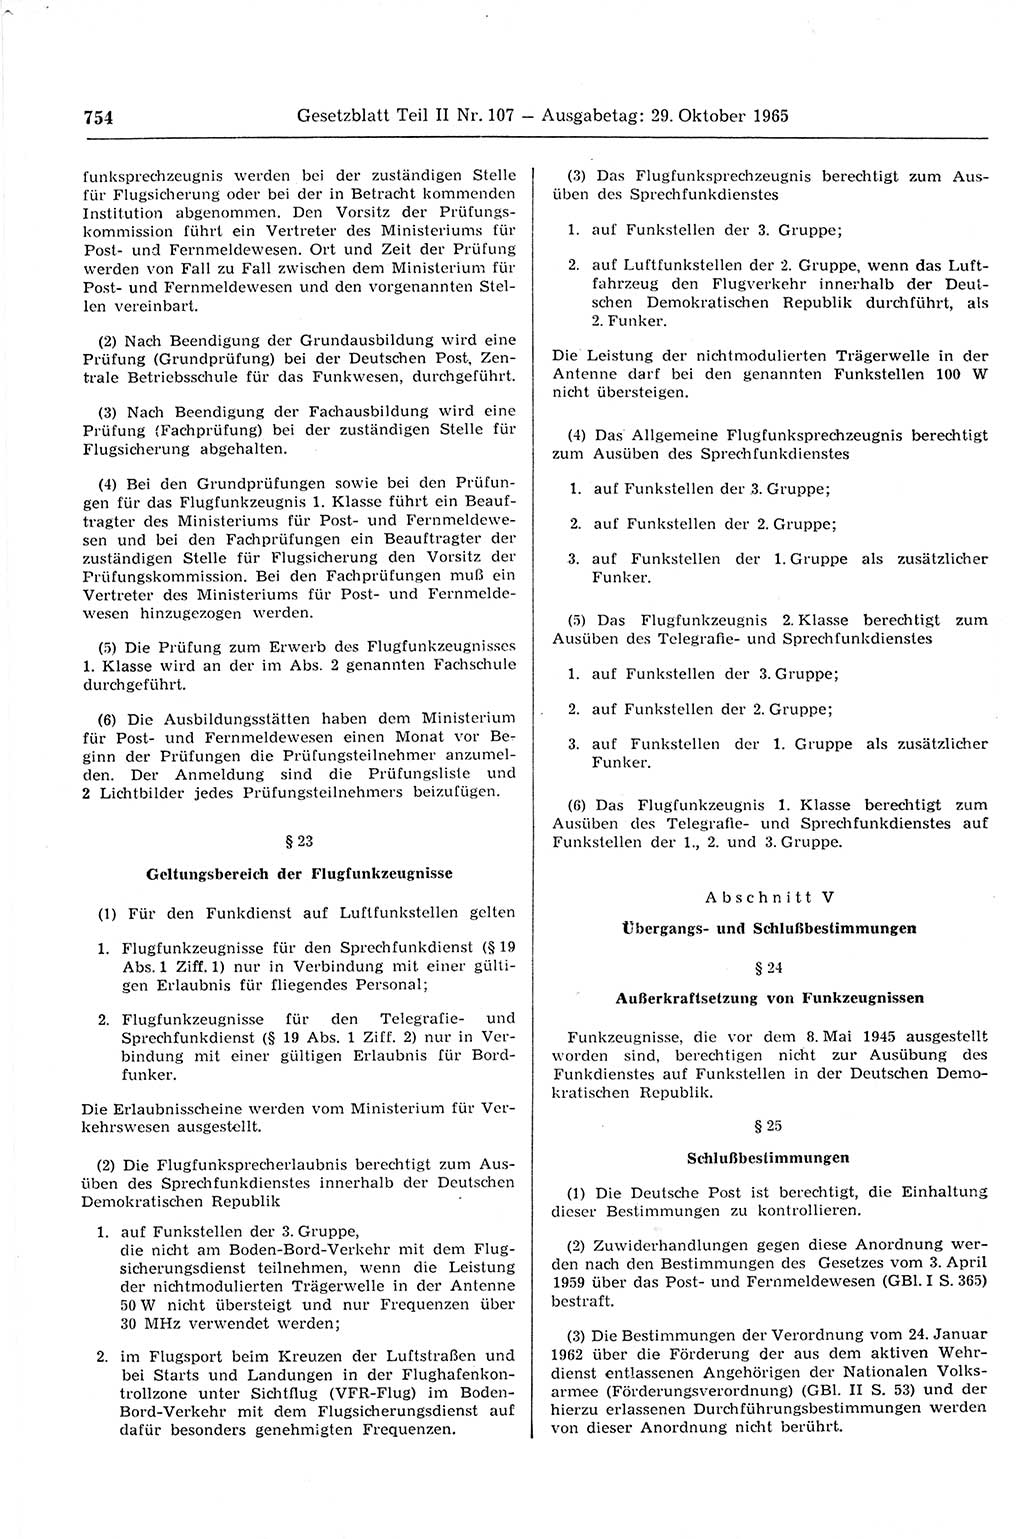 Gesetzblatt (GBl.) der Deutschen Demokratischen Republik (DDR) Teil ⅠⅠ 1965, Seite 754 (GBl. DDR ⅠⅠ 1965, S. 754)